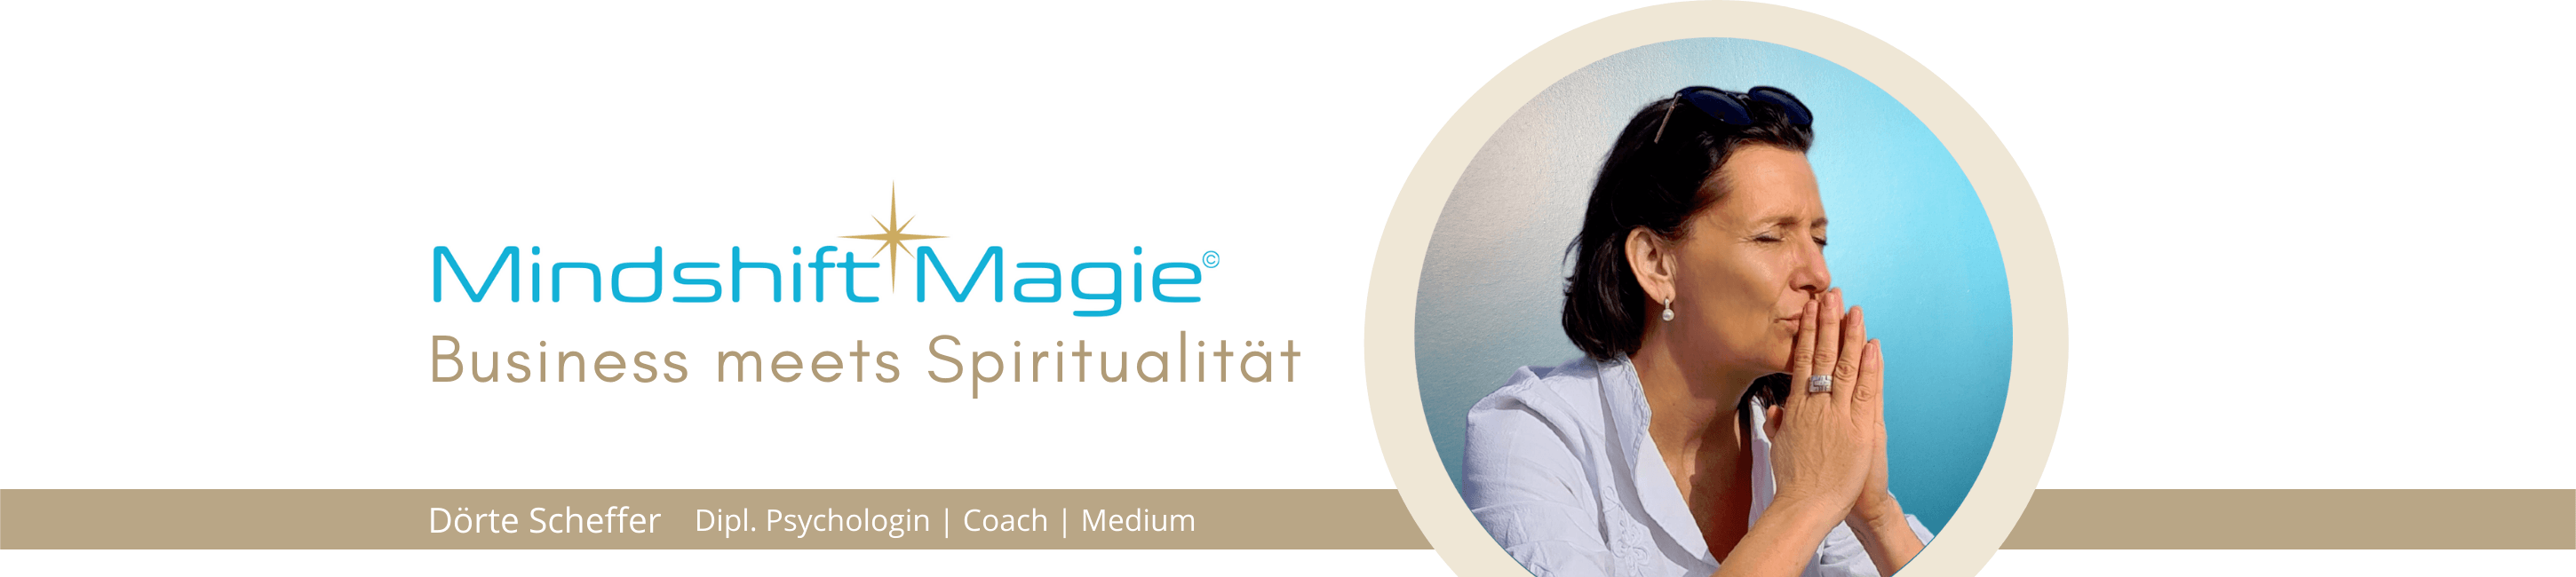 Mindshift Magie - Dörte Scheffer Psychologin Coach Medium